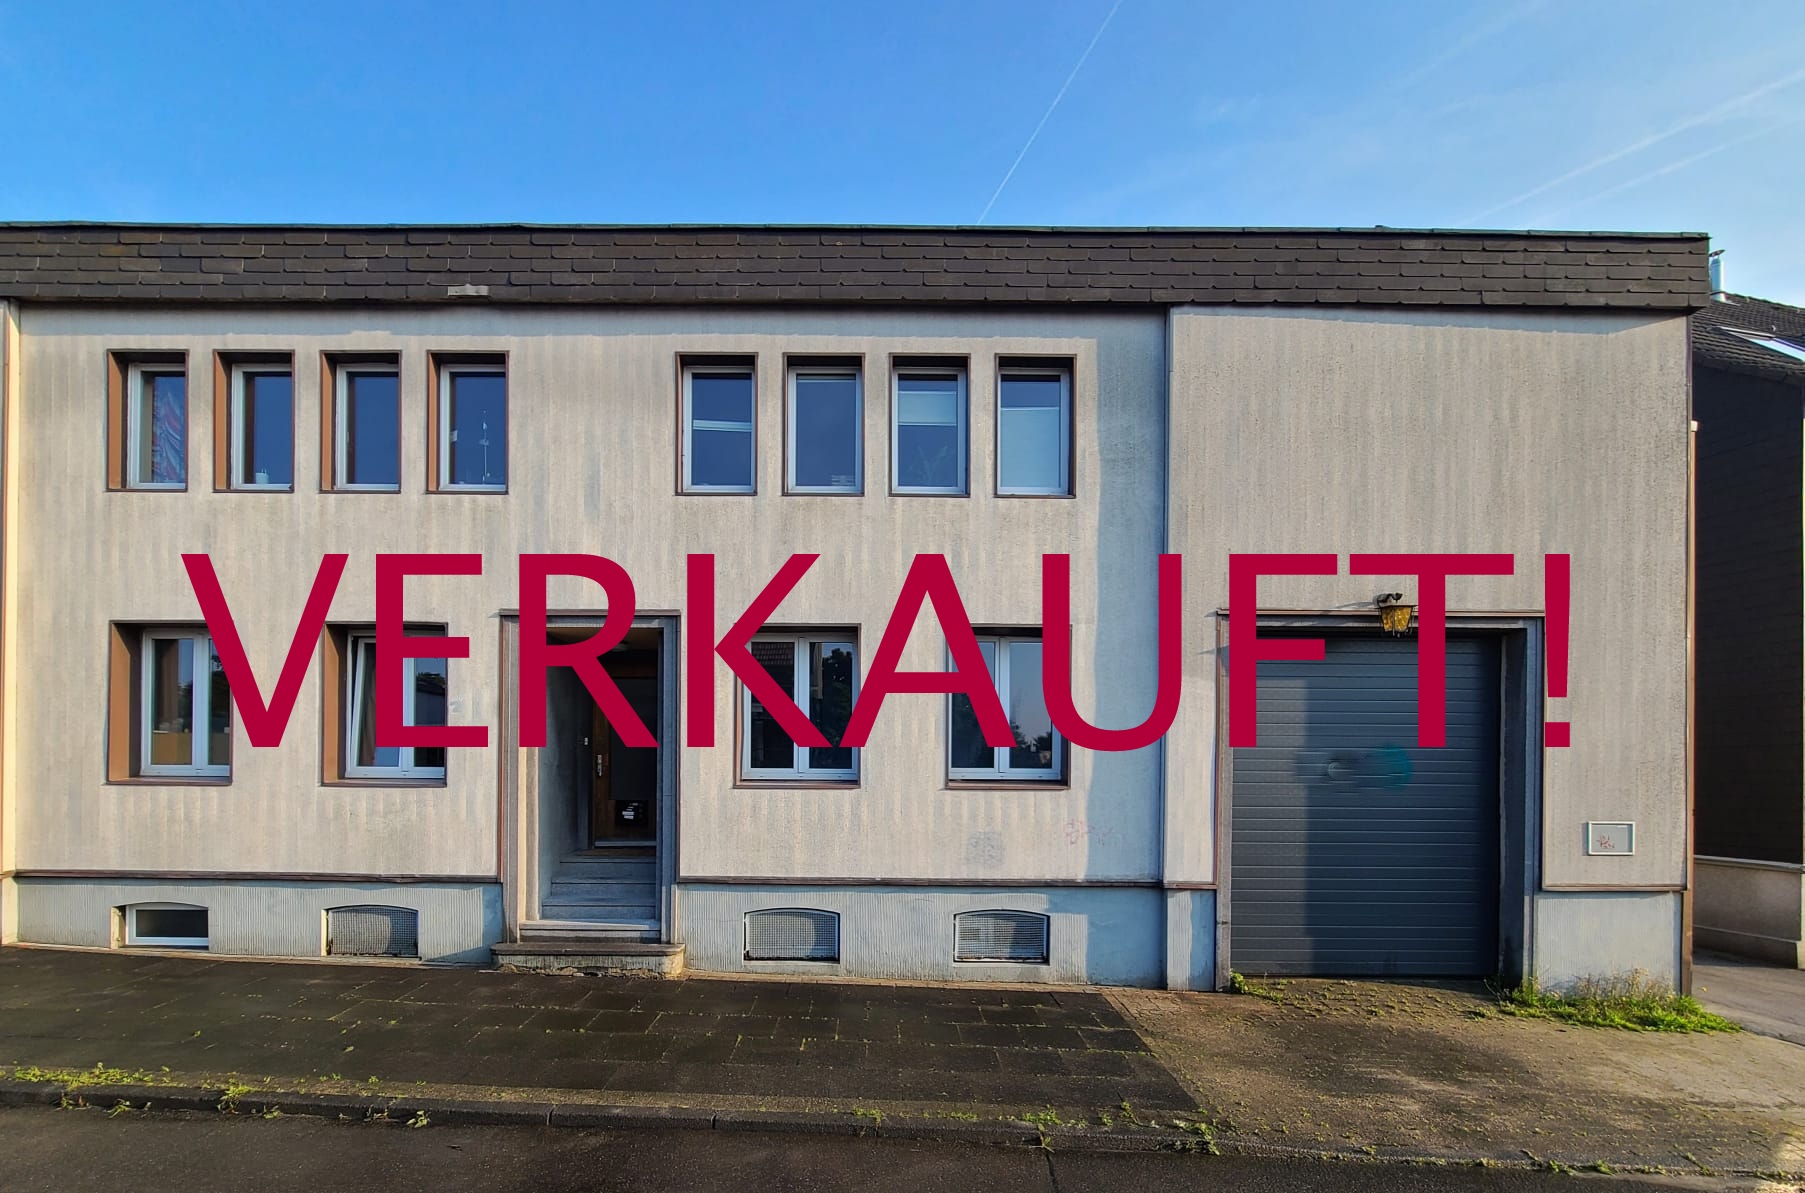 VERKAUFT! Schönes Reihenmittelhaus von 150m² + 70m² Nutzfläche und Gewerbehalle von ca. 100 m² in Wuppertal-Cronenberg/Küllenhahn